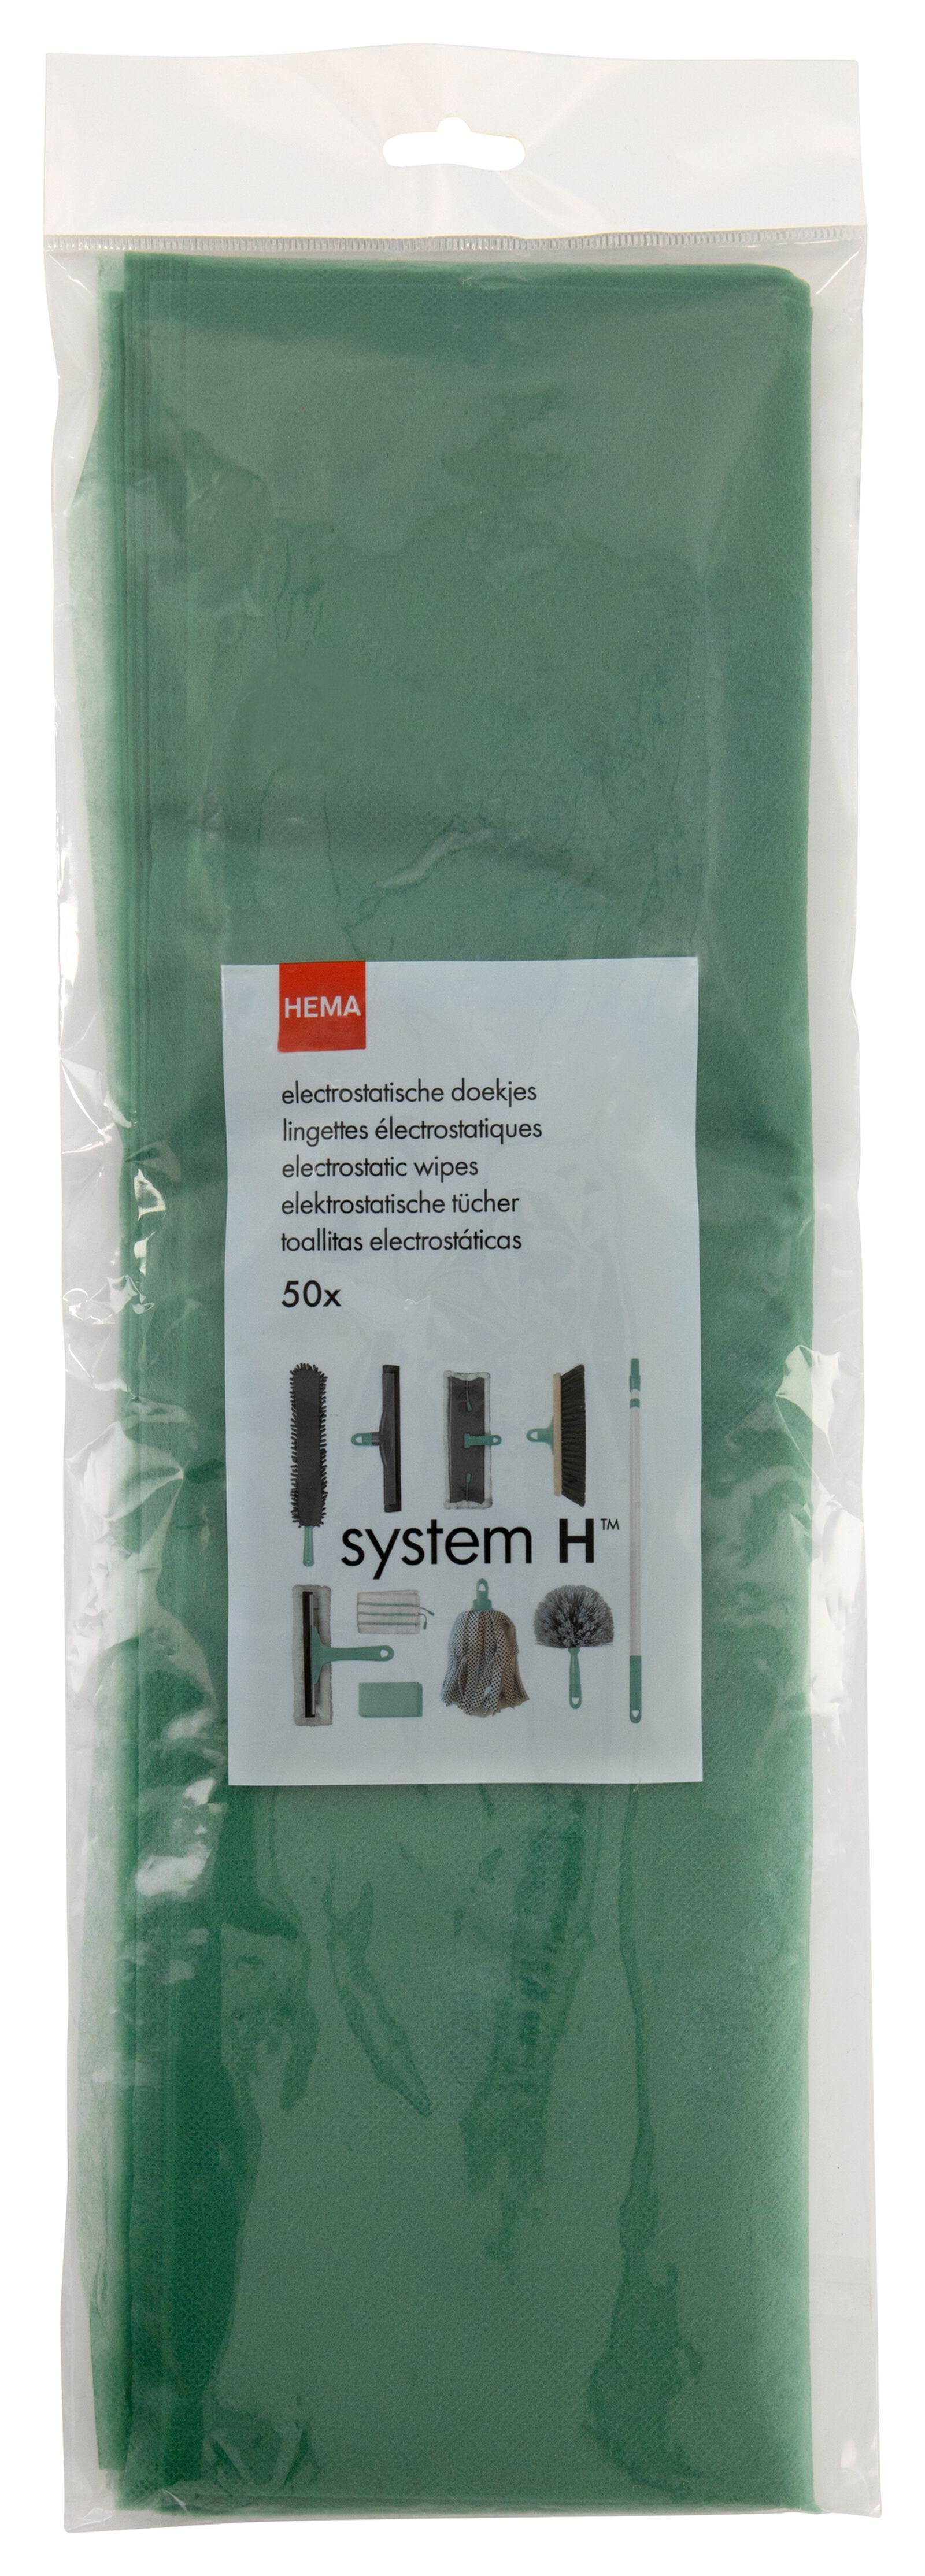 elektrostatische vloerdoekjes - System H - 50 stuks - 20510082 - HEMA